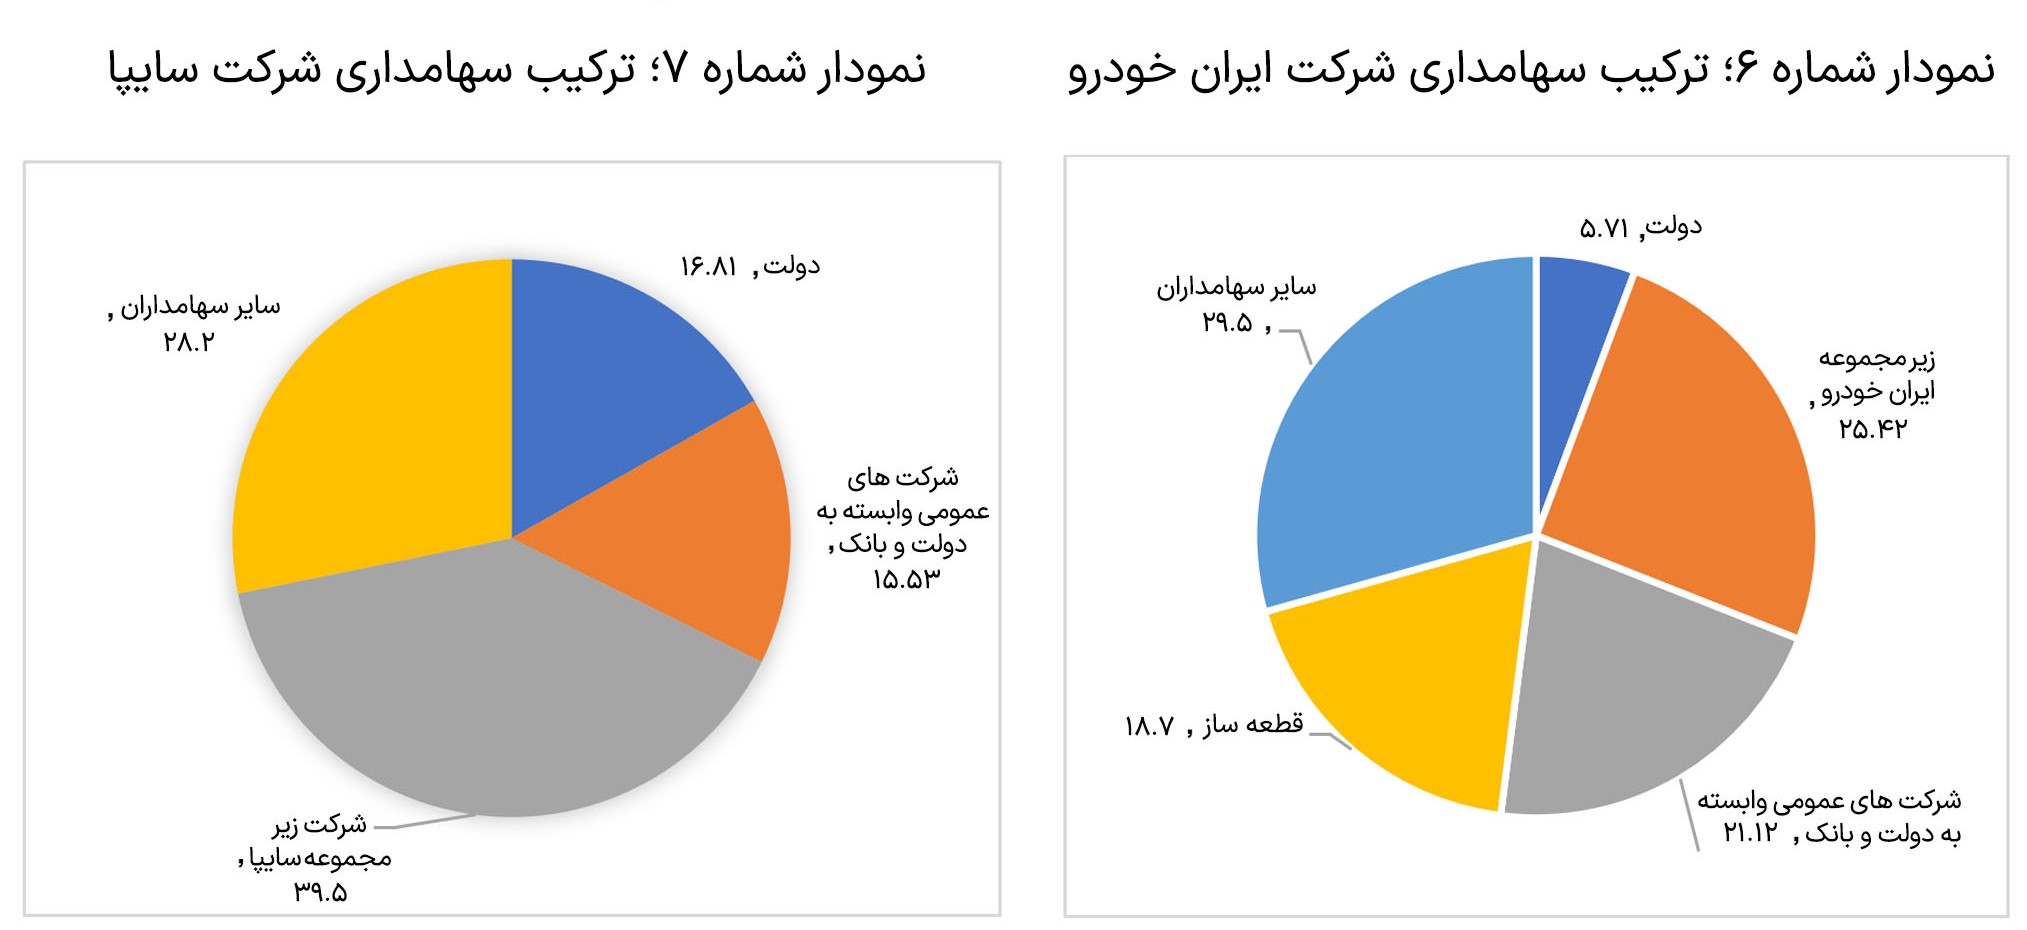 بررسی-عملکرد-دو-شرکت-ایران-خودرو-و-سایپا5-3-slide-02.jpg